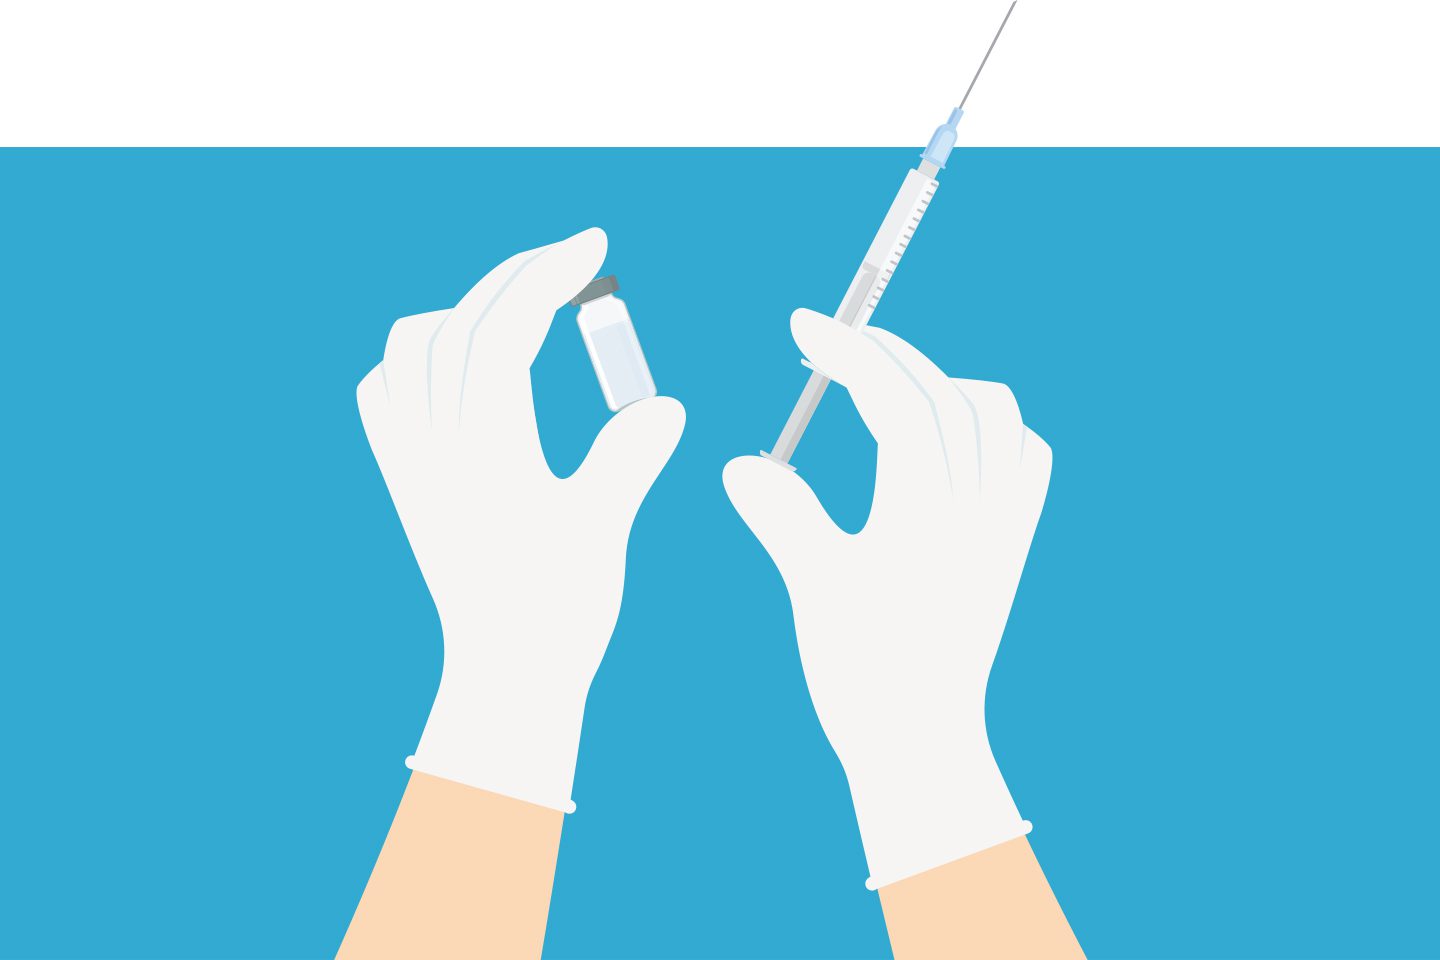 illustration of hands holding a syringe and medicine